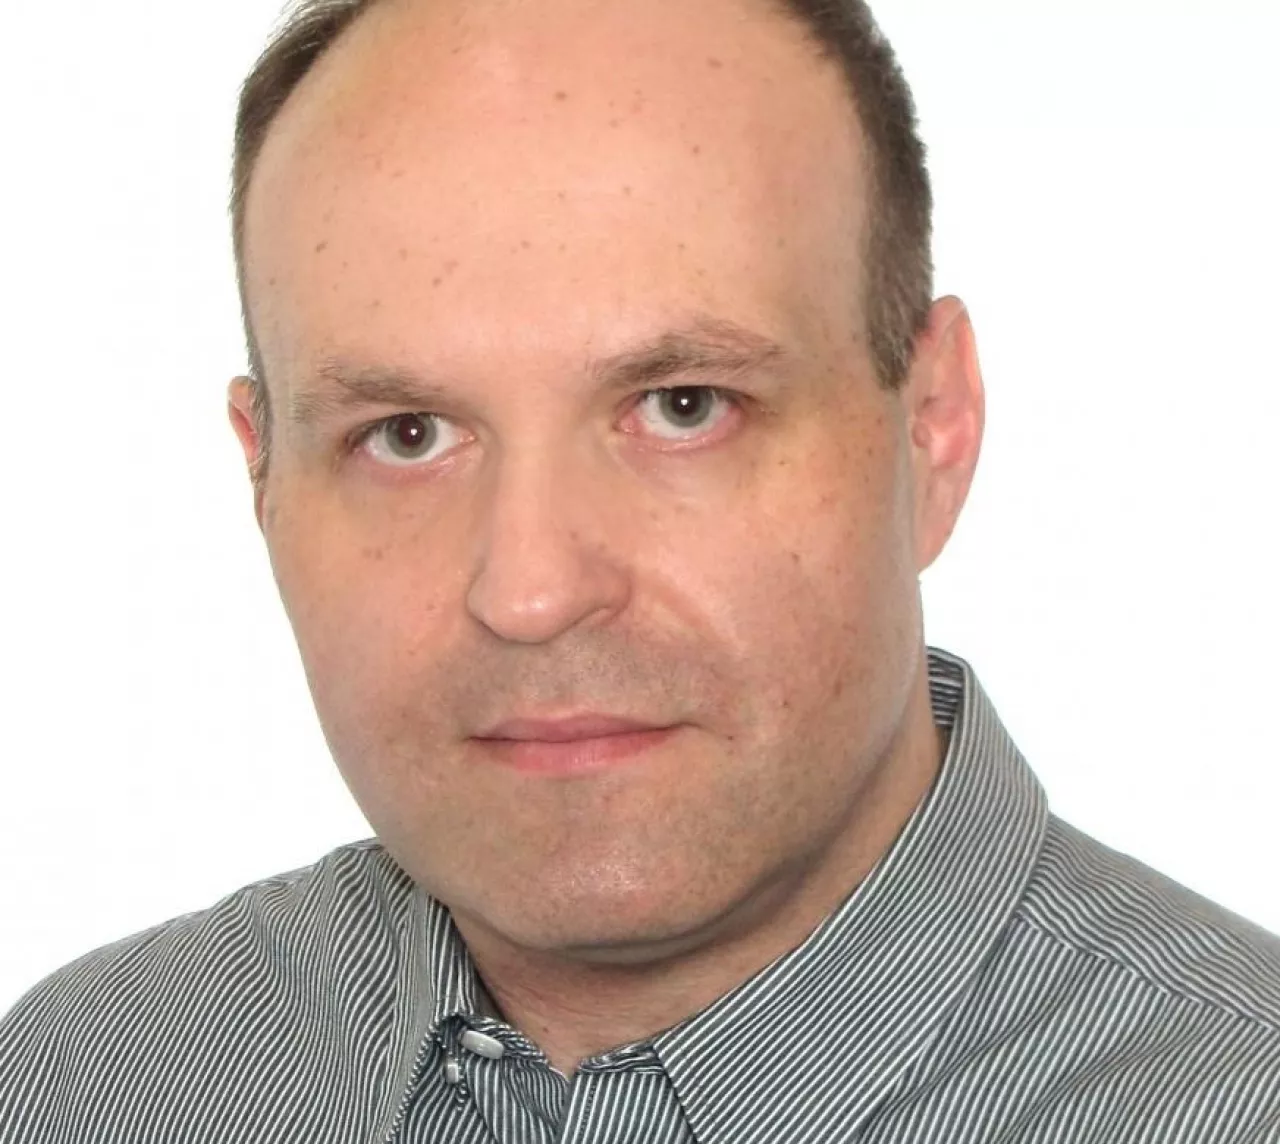 Maciej Ptaszyński, dyrektor Polskiej Izby Handlu (materiały prasowe)